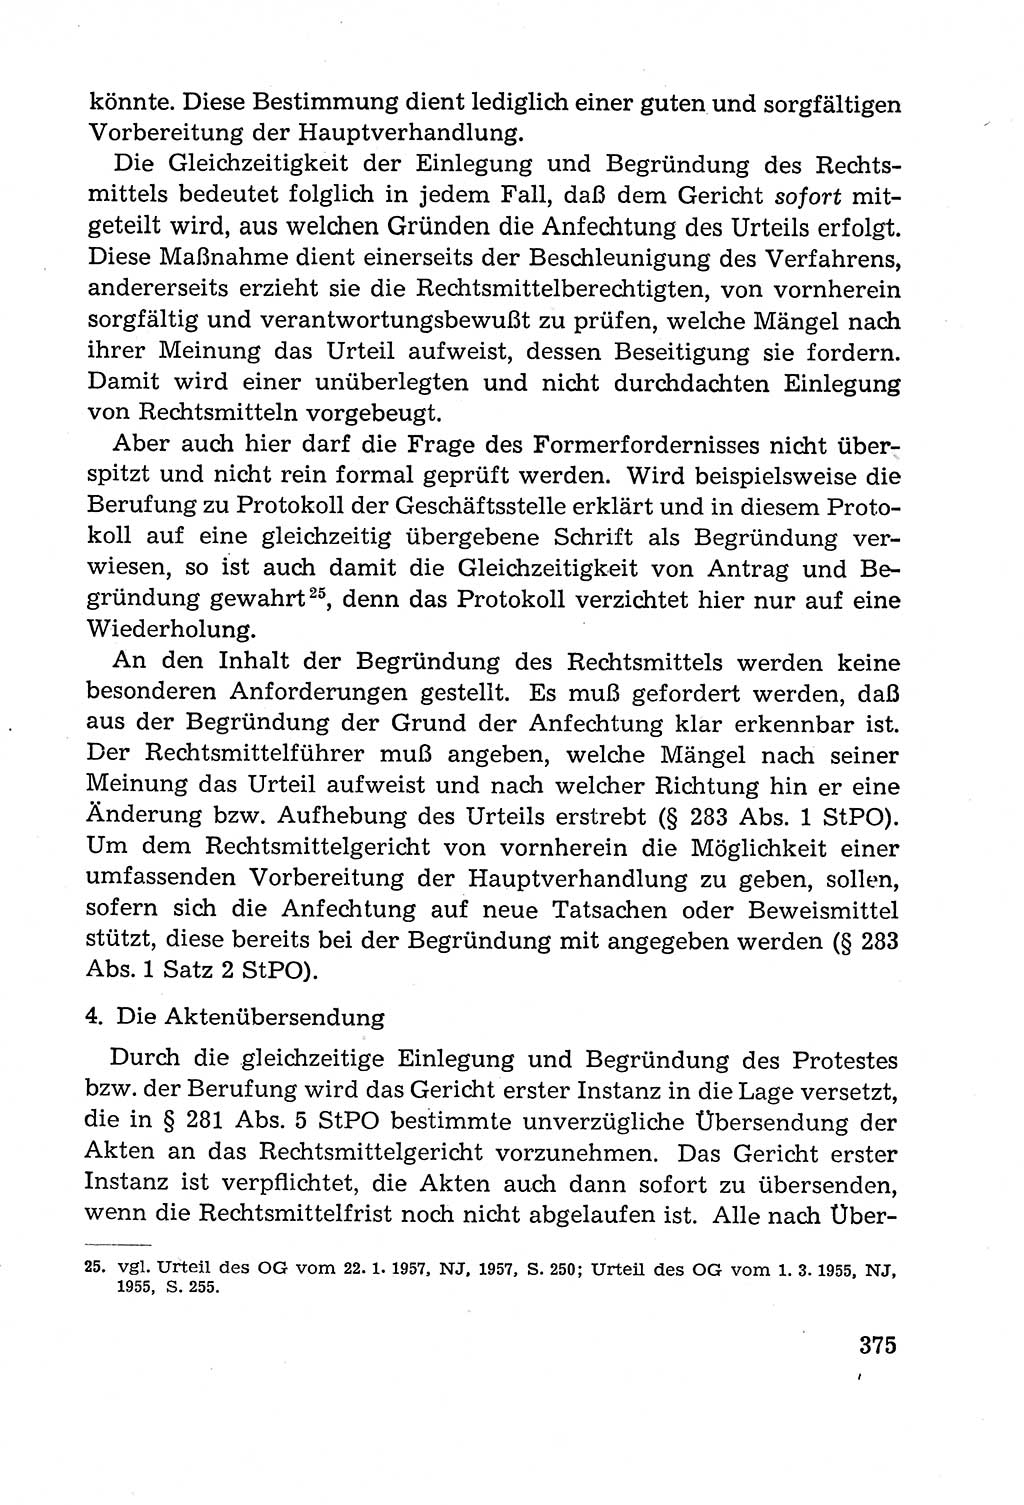 Leitfaden des Strafprozeßrechts der Deutschen Demokratischen Republik (DDR) 1959, Seite 375 (LF StPR DDR 1959, S. 375)